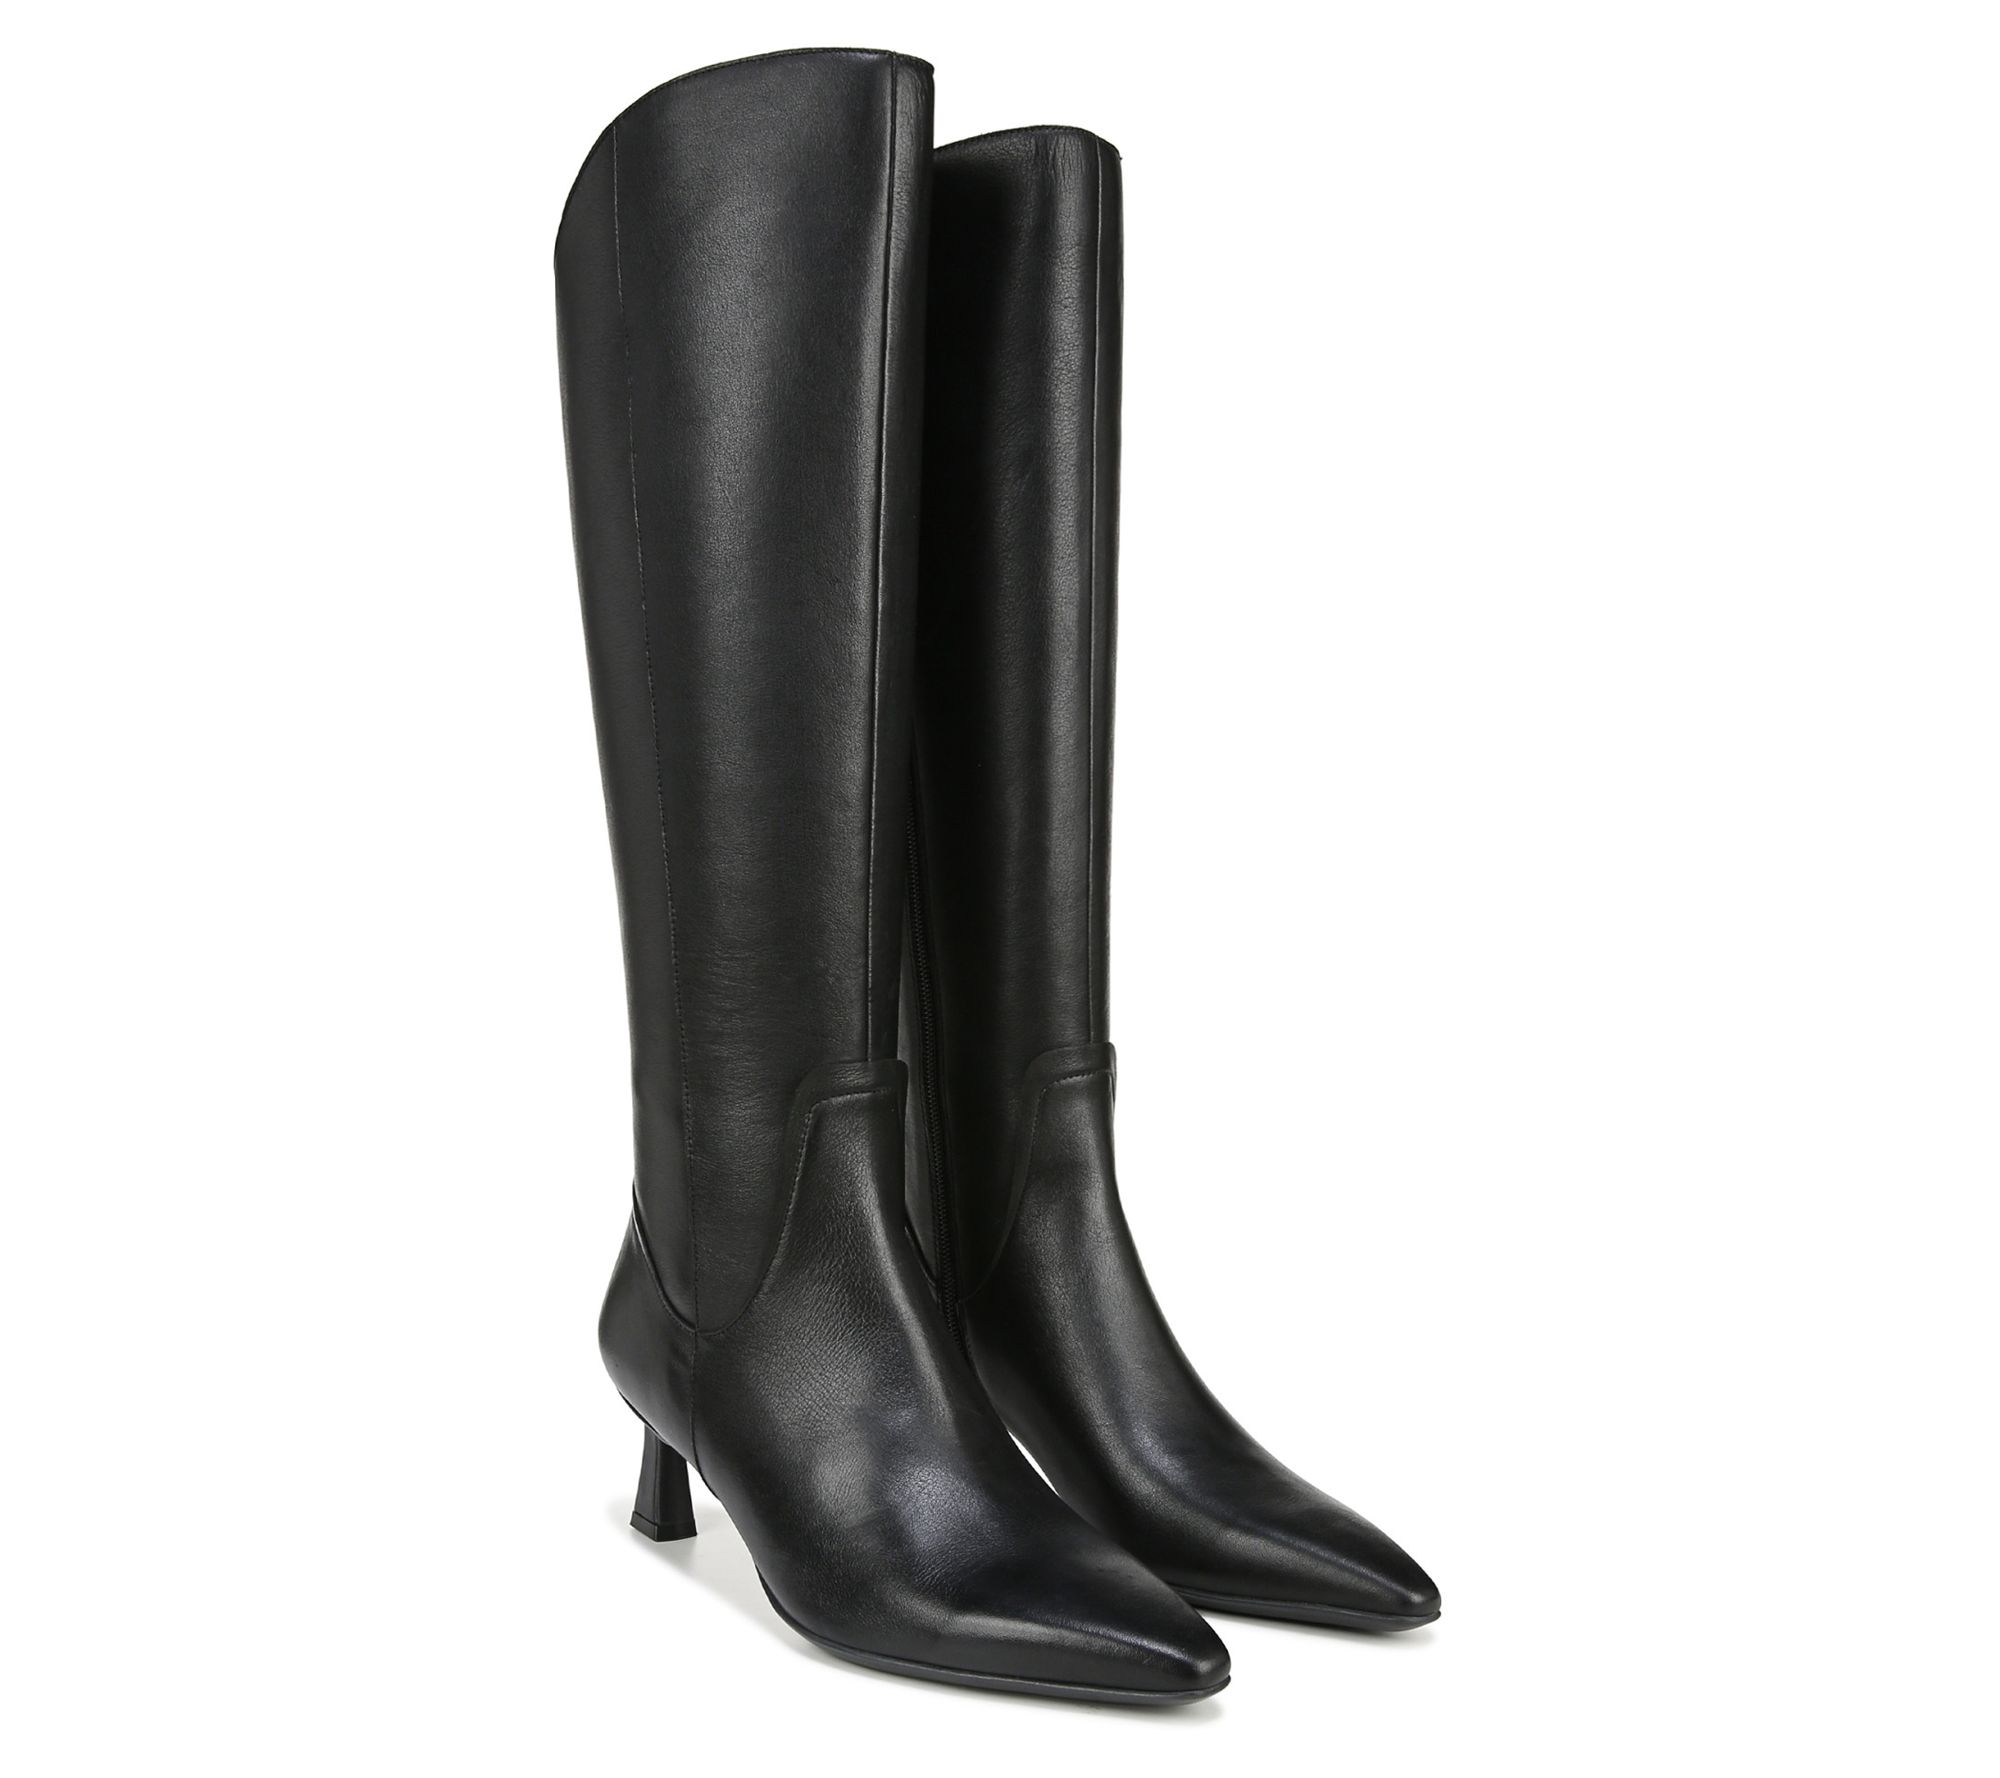 Naturalizer High Shaft Boots - Deesha Narrow Calf - QVC.com